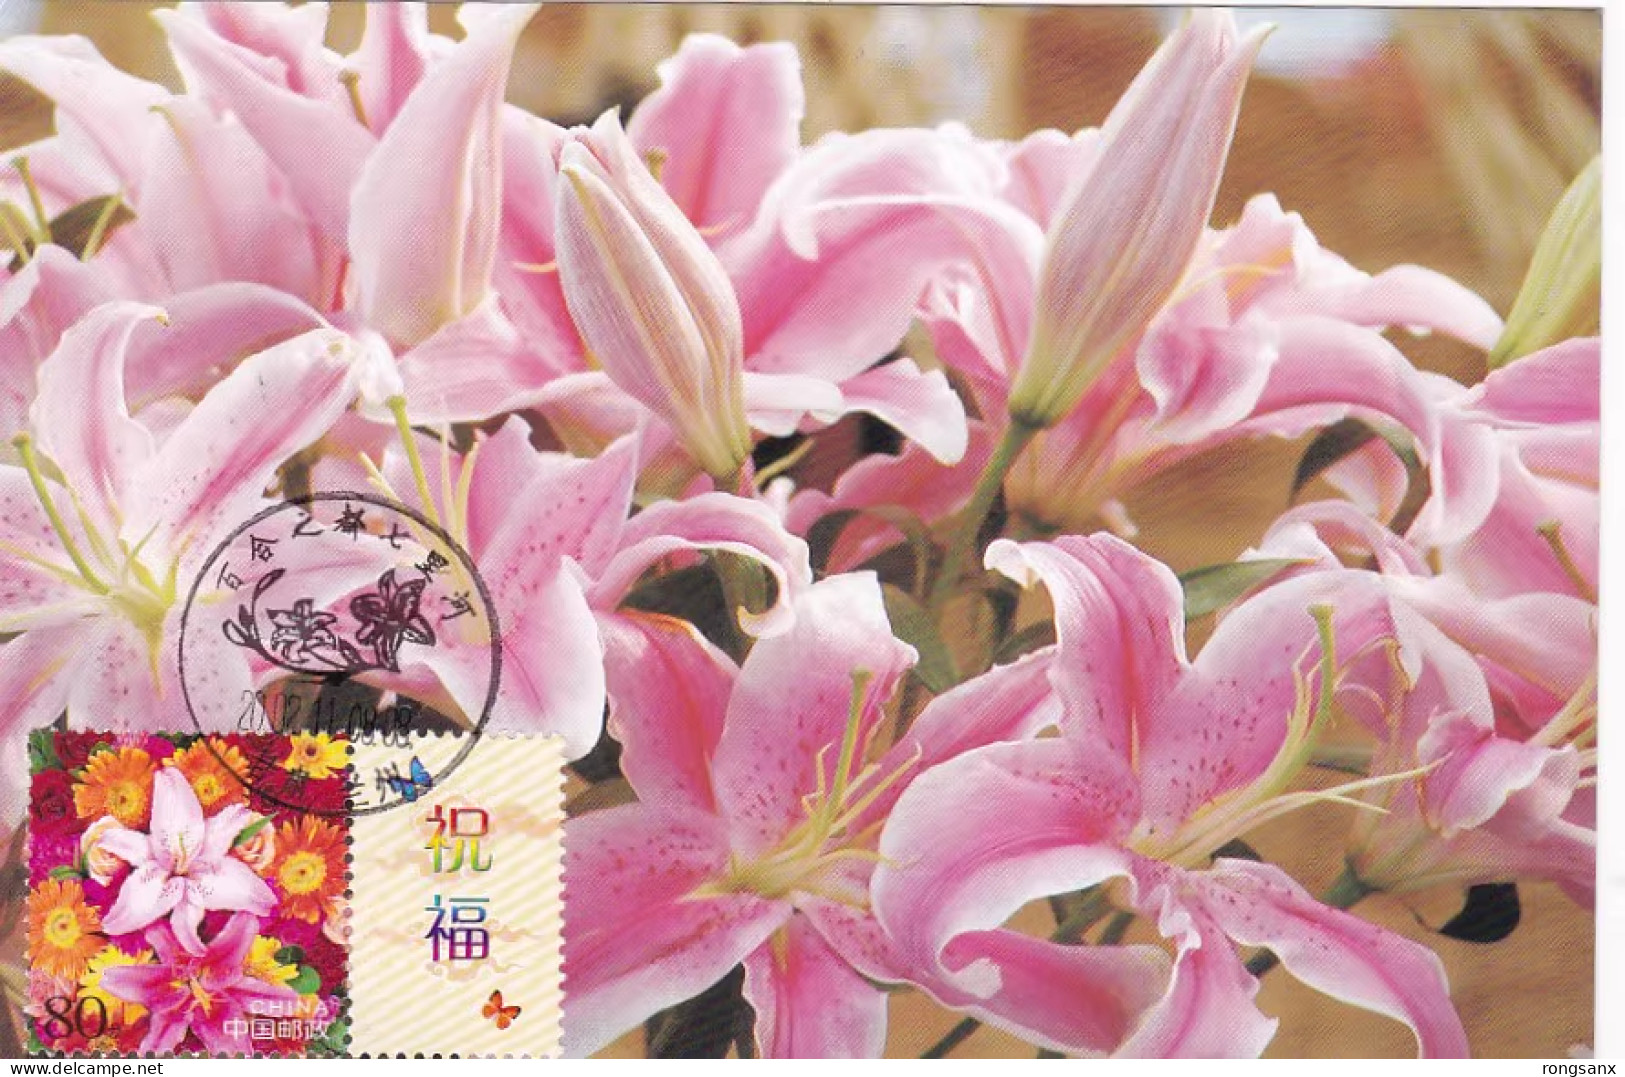 2002 CHINA G-2 GREETING STAMP FLOWER LOCAL MC-S VIEW PMK - Maximumkarten